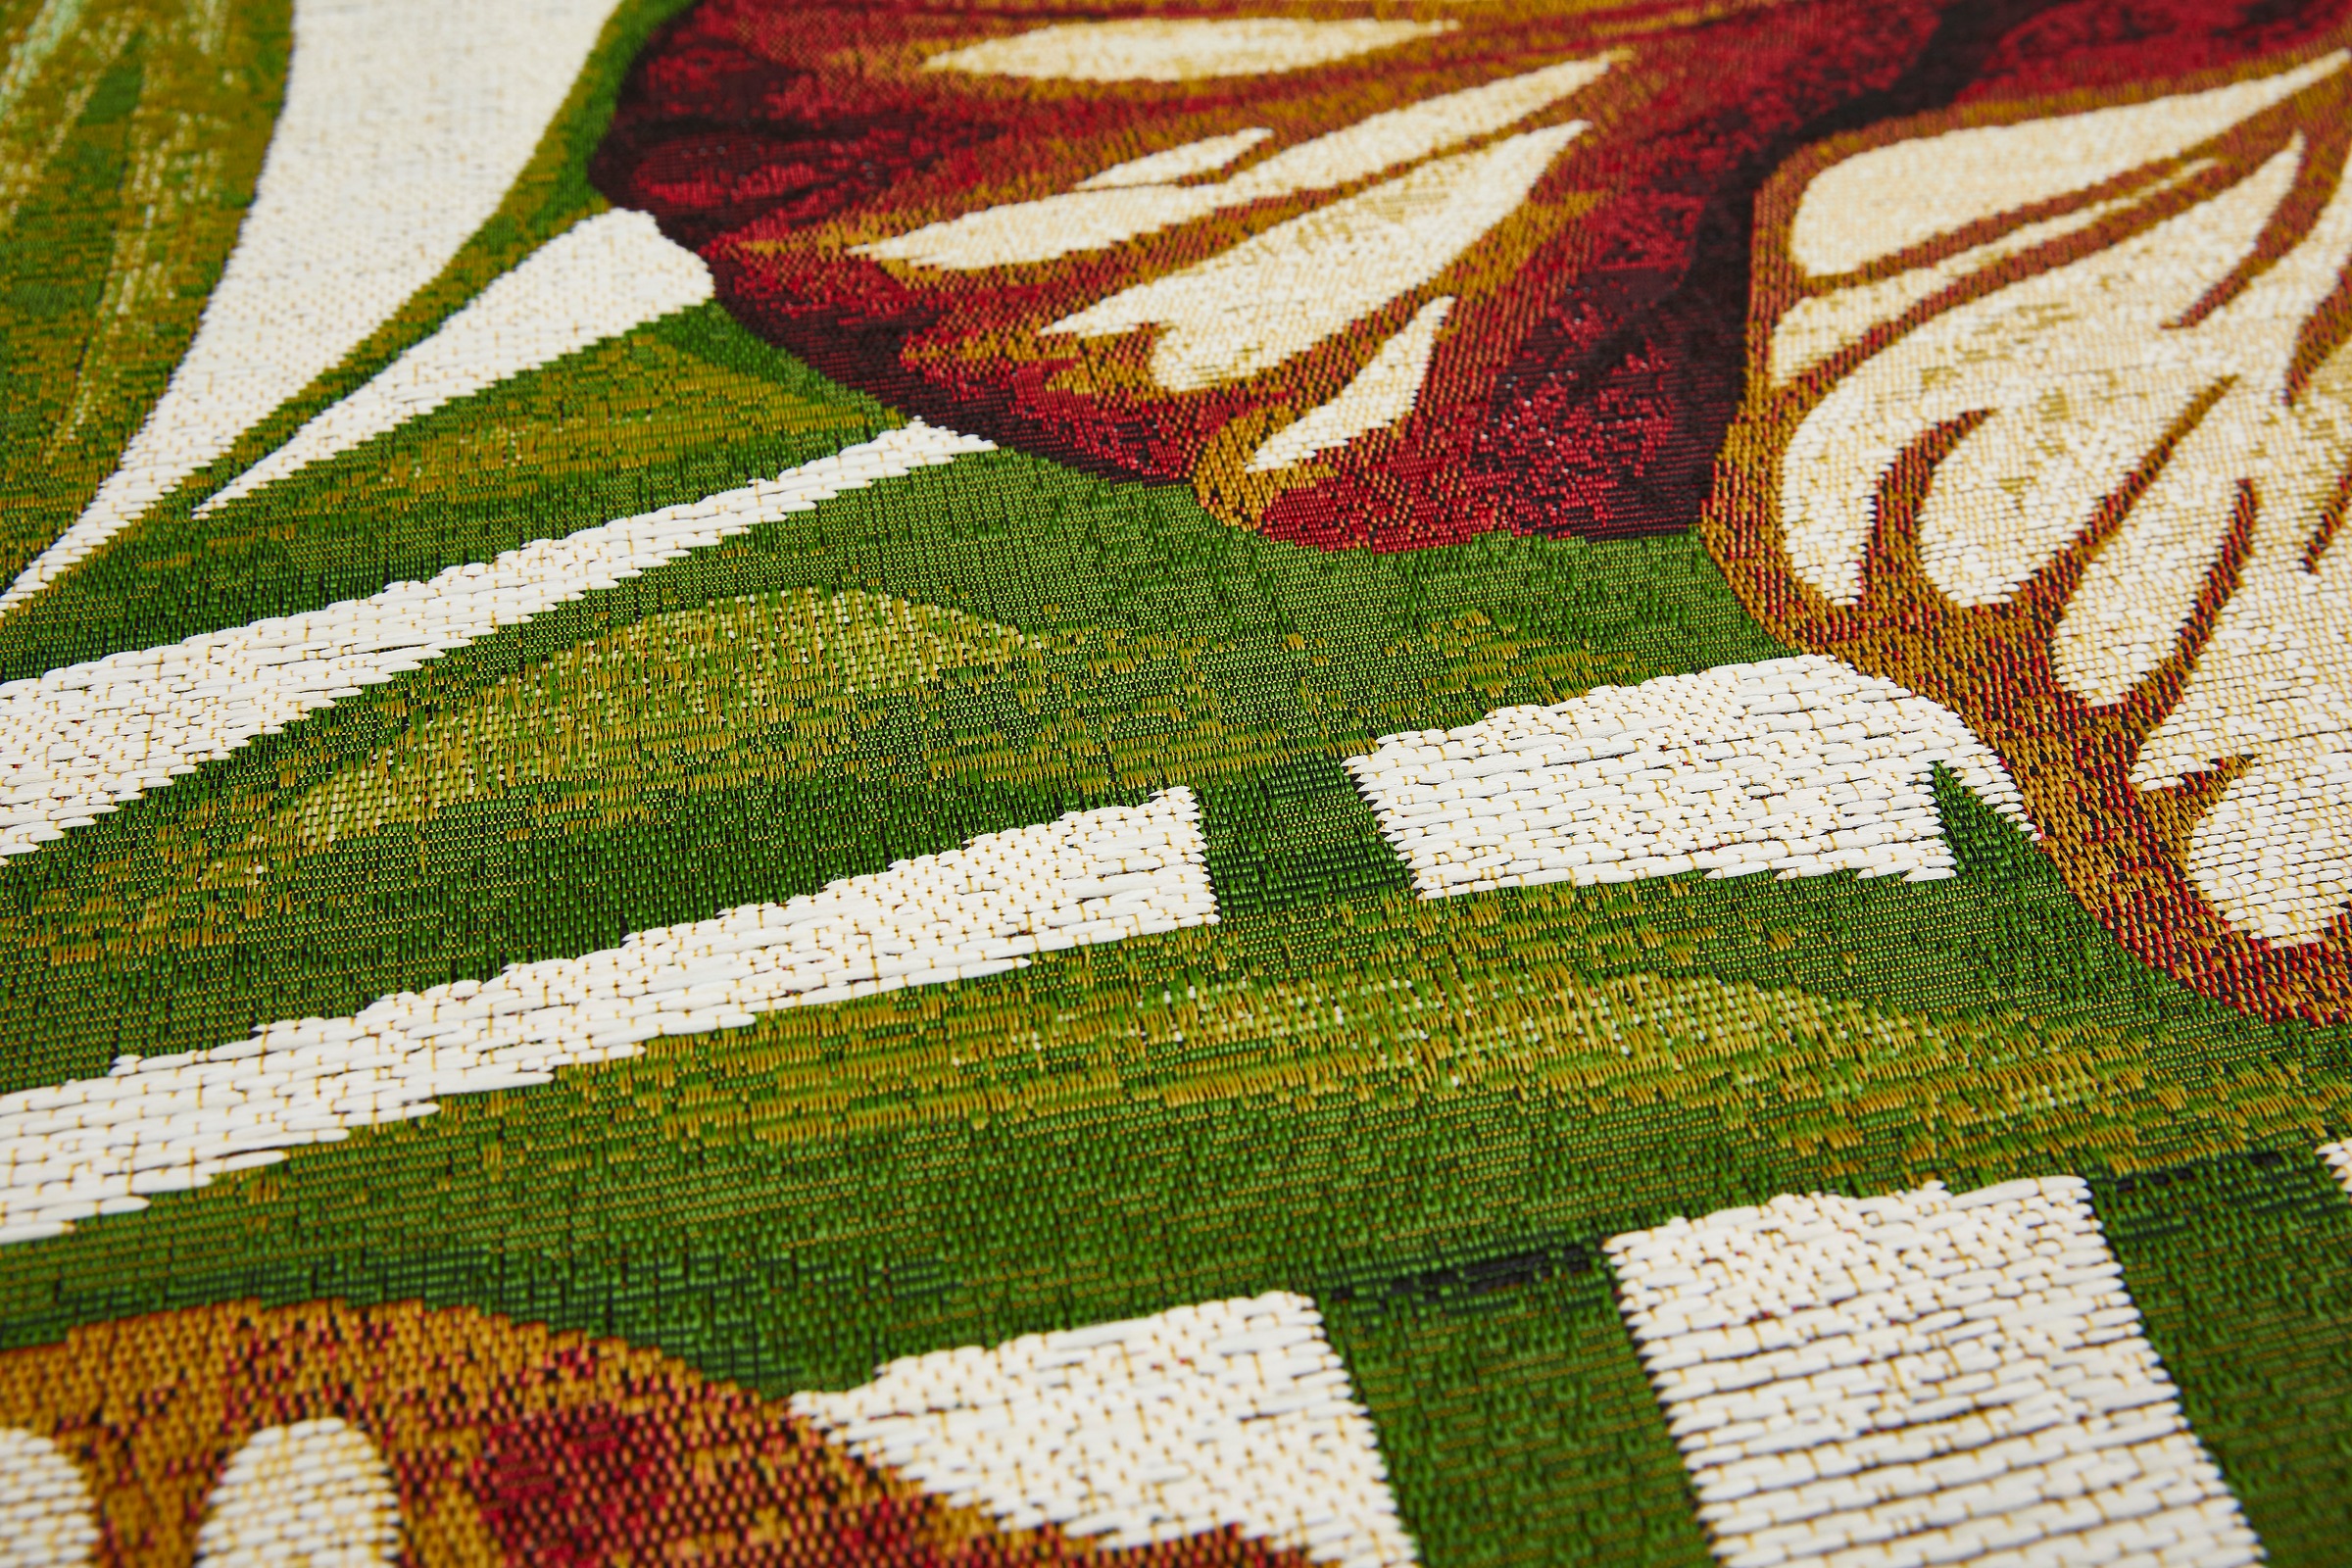 LUXOR living Teppich »Panama Blume«, rechteckig, Flachgewebe, modernes Design, Motiv Blumen, In- und Outdoor geeignet